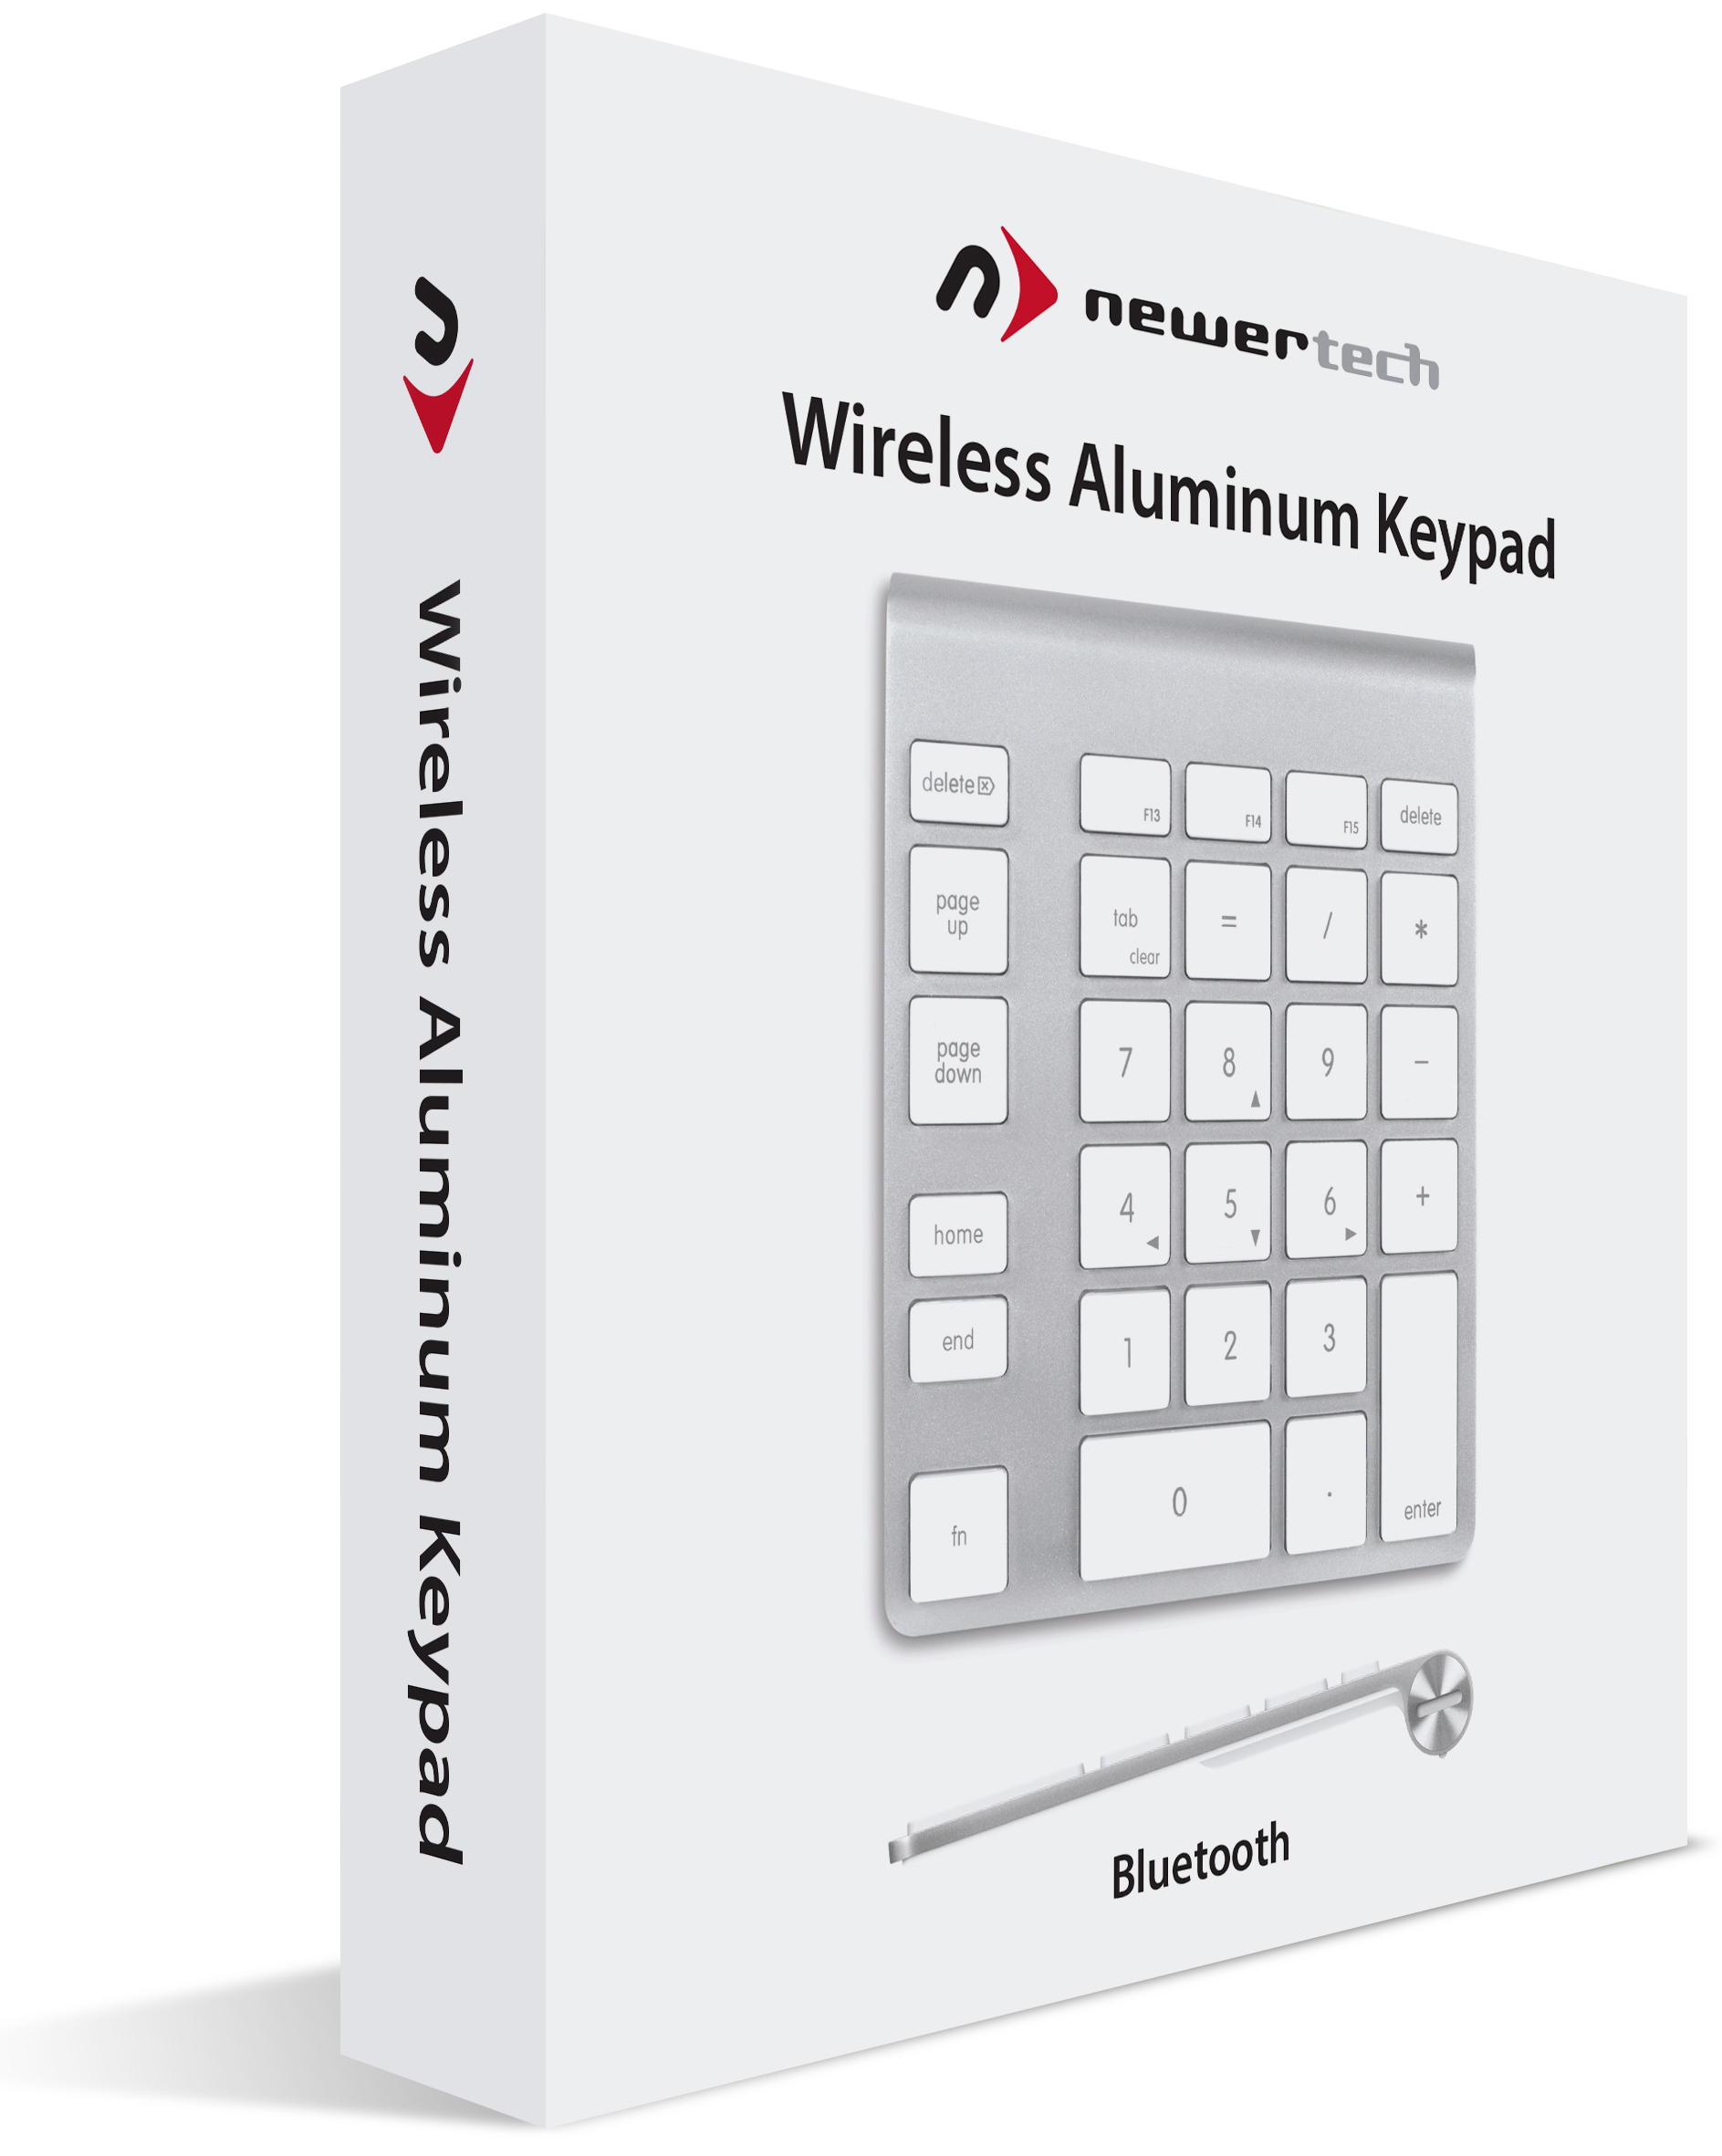 NewerTech Wireless Aluminum Keypad Box